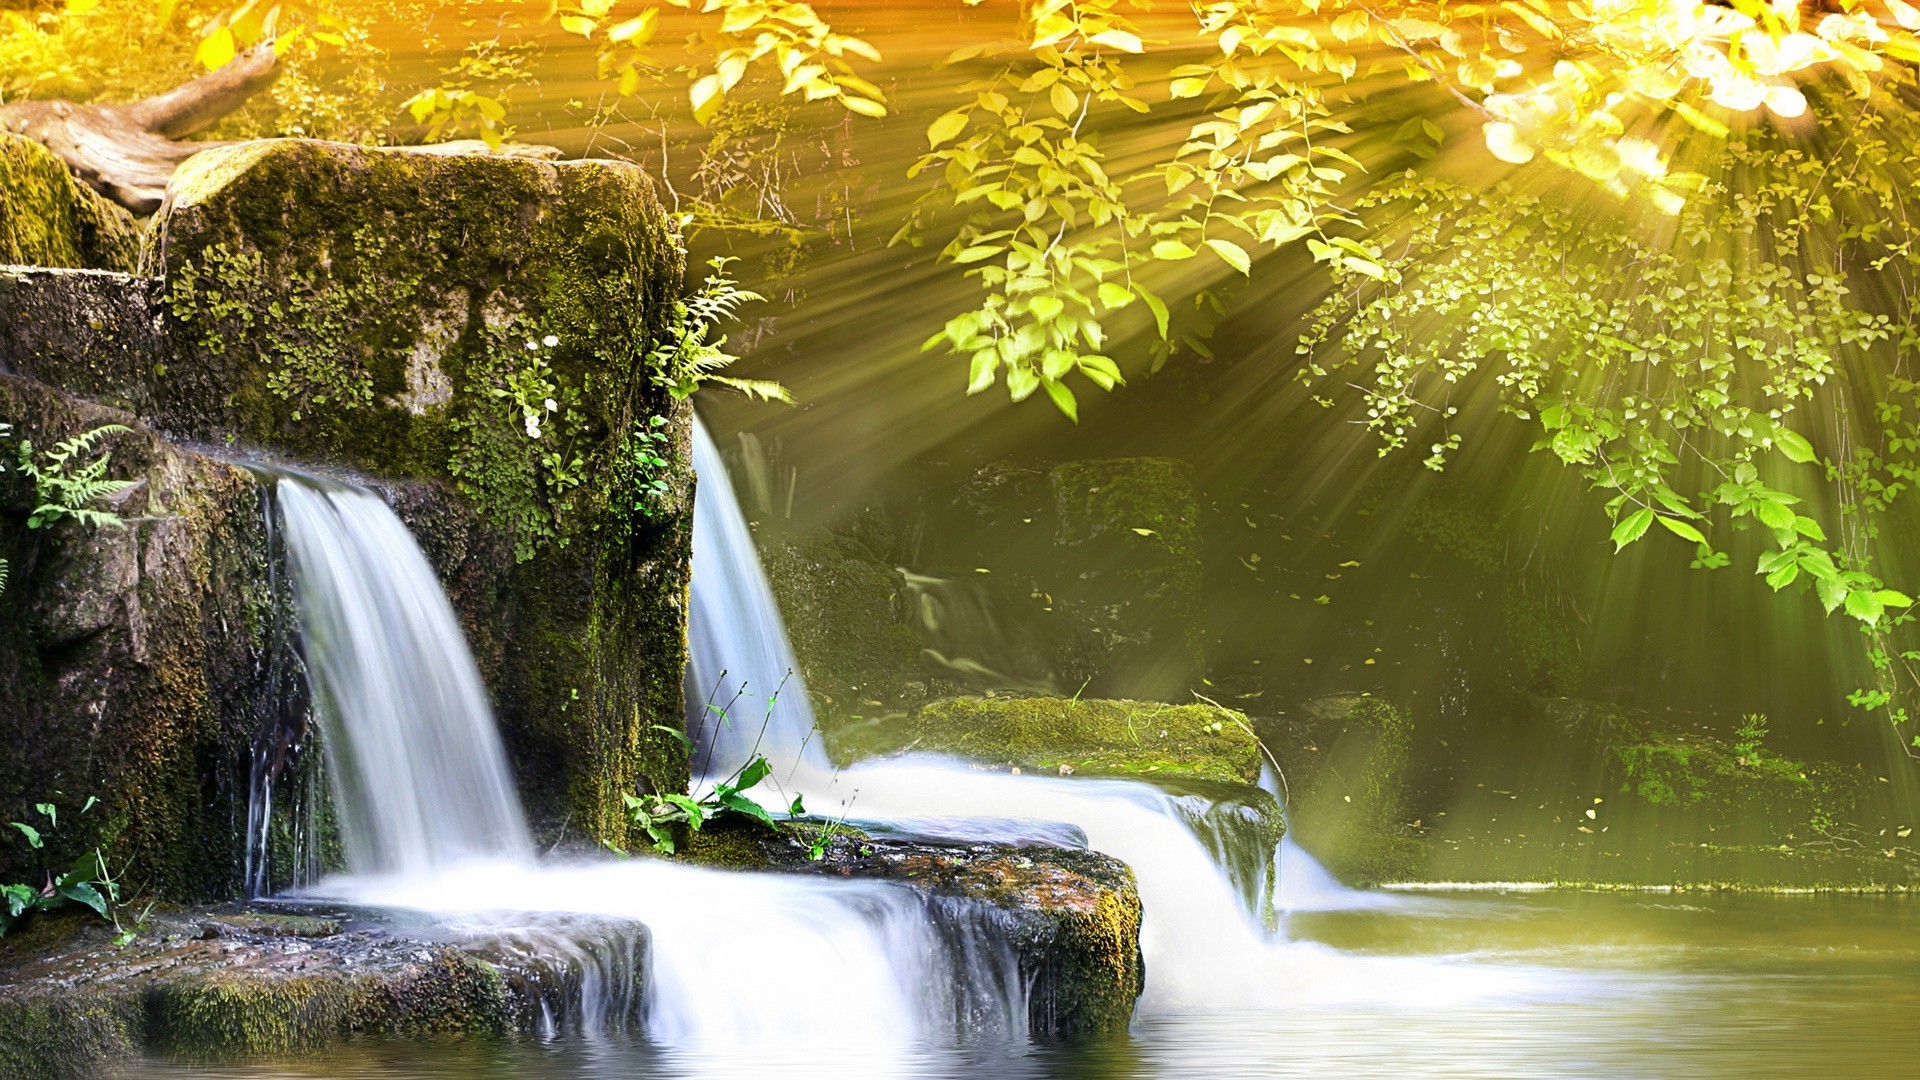 водопады водопад воды осень лист природа река поток каскад на открытом воздухе размытость поток лето мокрый путешествия движения всплеск древесины парк крик